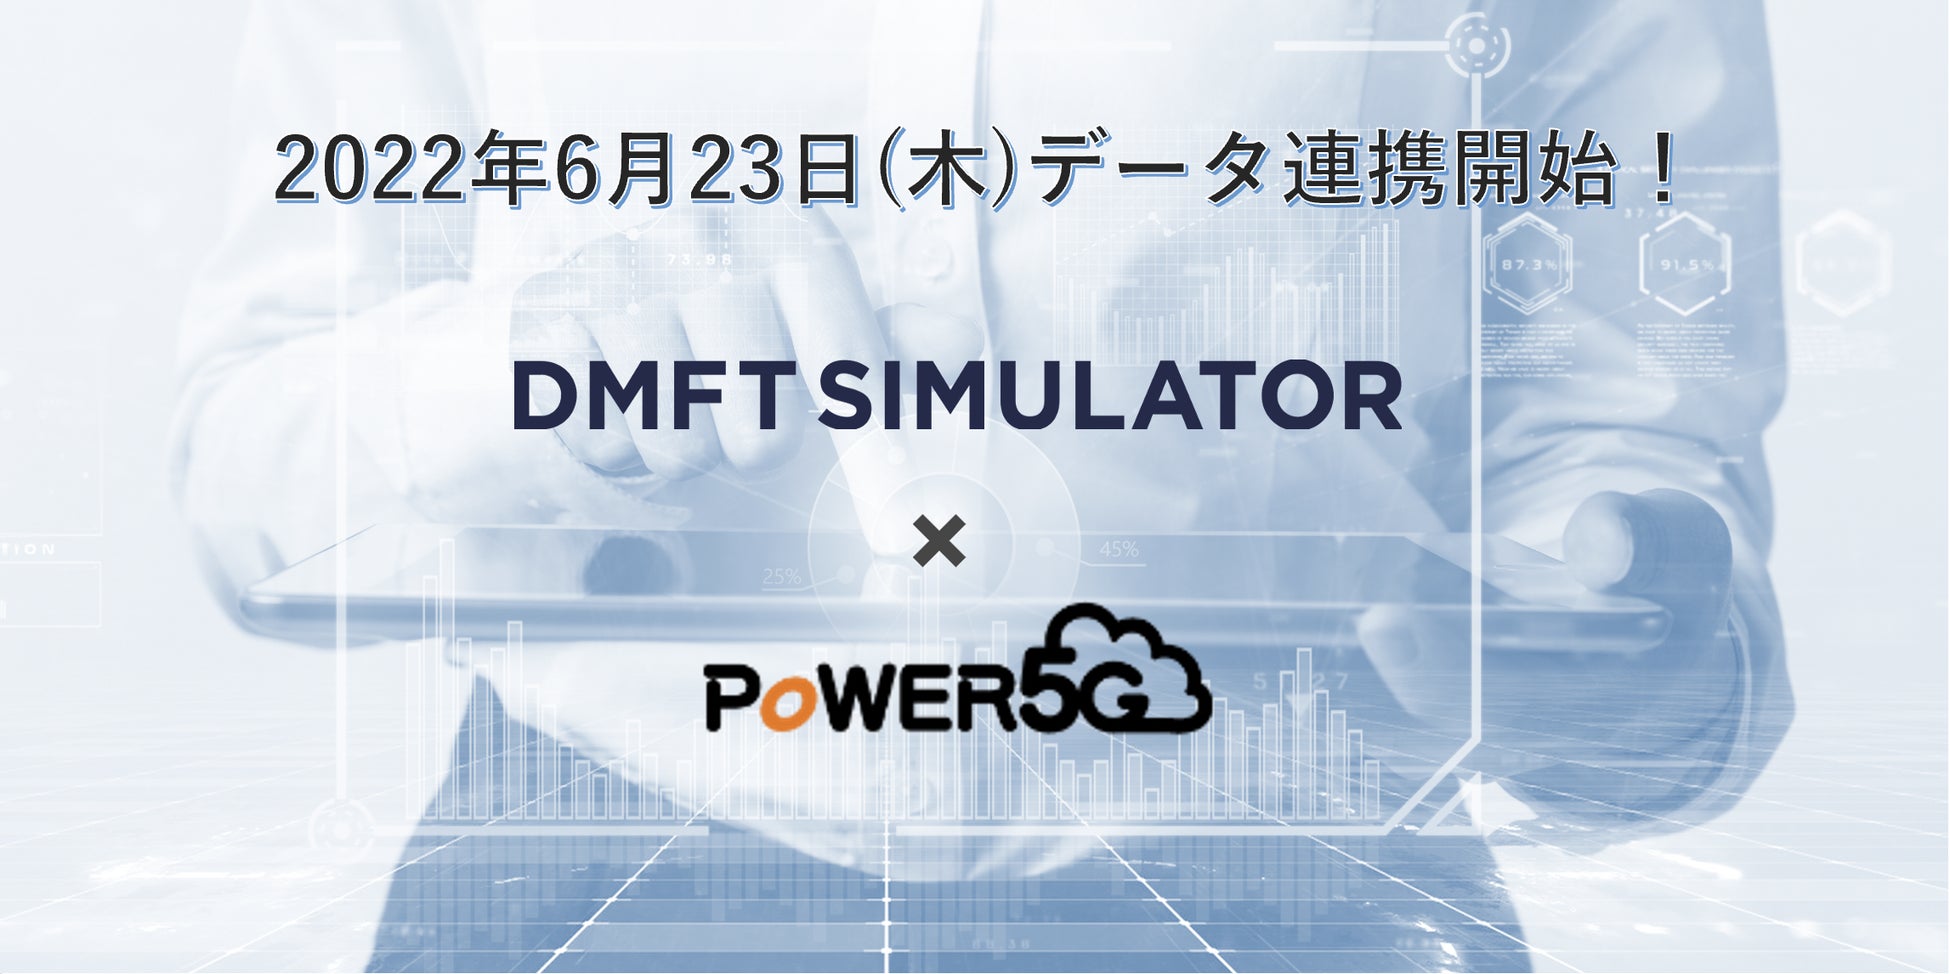 クラウド型歯科用レセコン「POWER5G」と「DMFTシミュレーター」のデータ連携を開始！